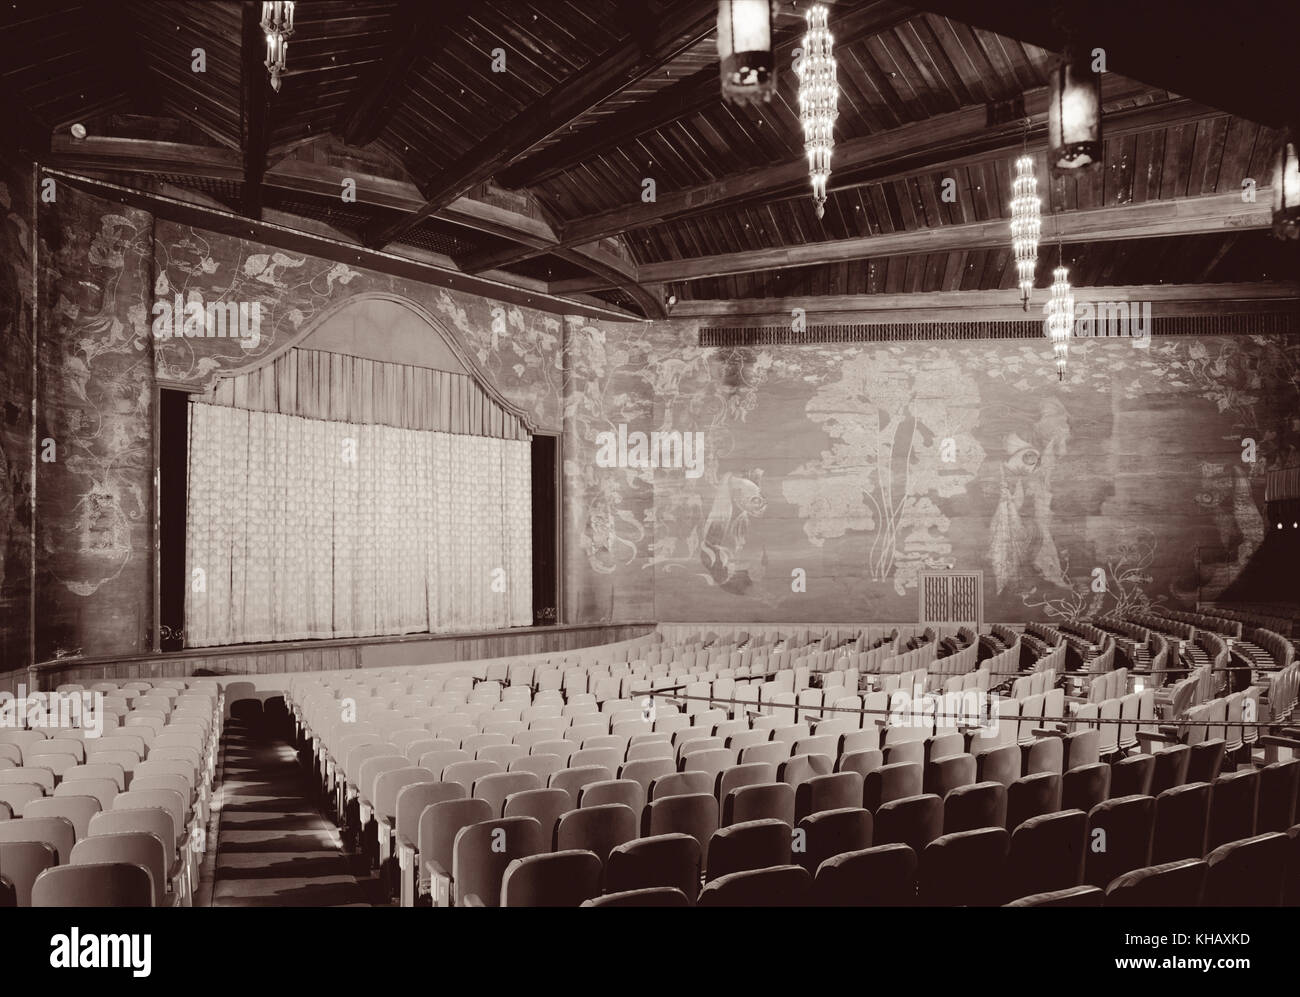 Vue de l'intérieur du théâtre Paramount à Palm Beach, en Floride. Le film historique palace a été construit en 1926 et conçu dans le quartier maure et Revival style colonial revival espagnol par Joseph urbaines aussi un film muet théâtre juste avant l'avènement de 'parlant'. (Photo c1972) Banque D'Images